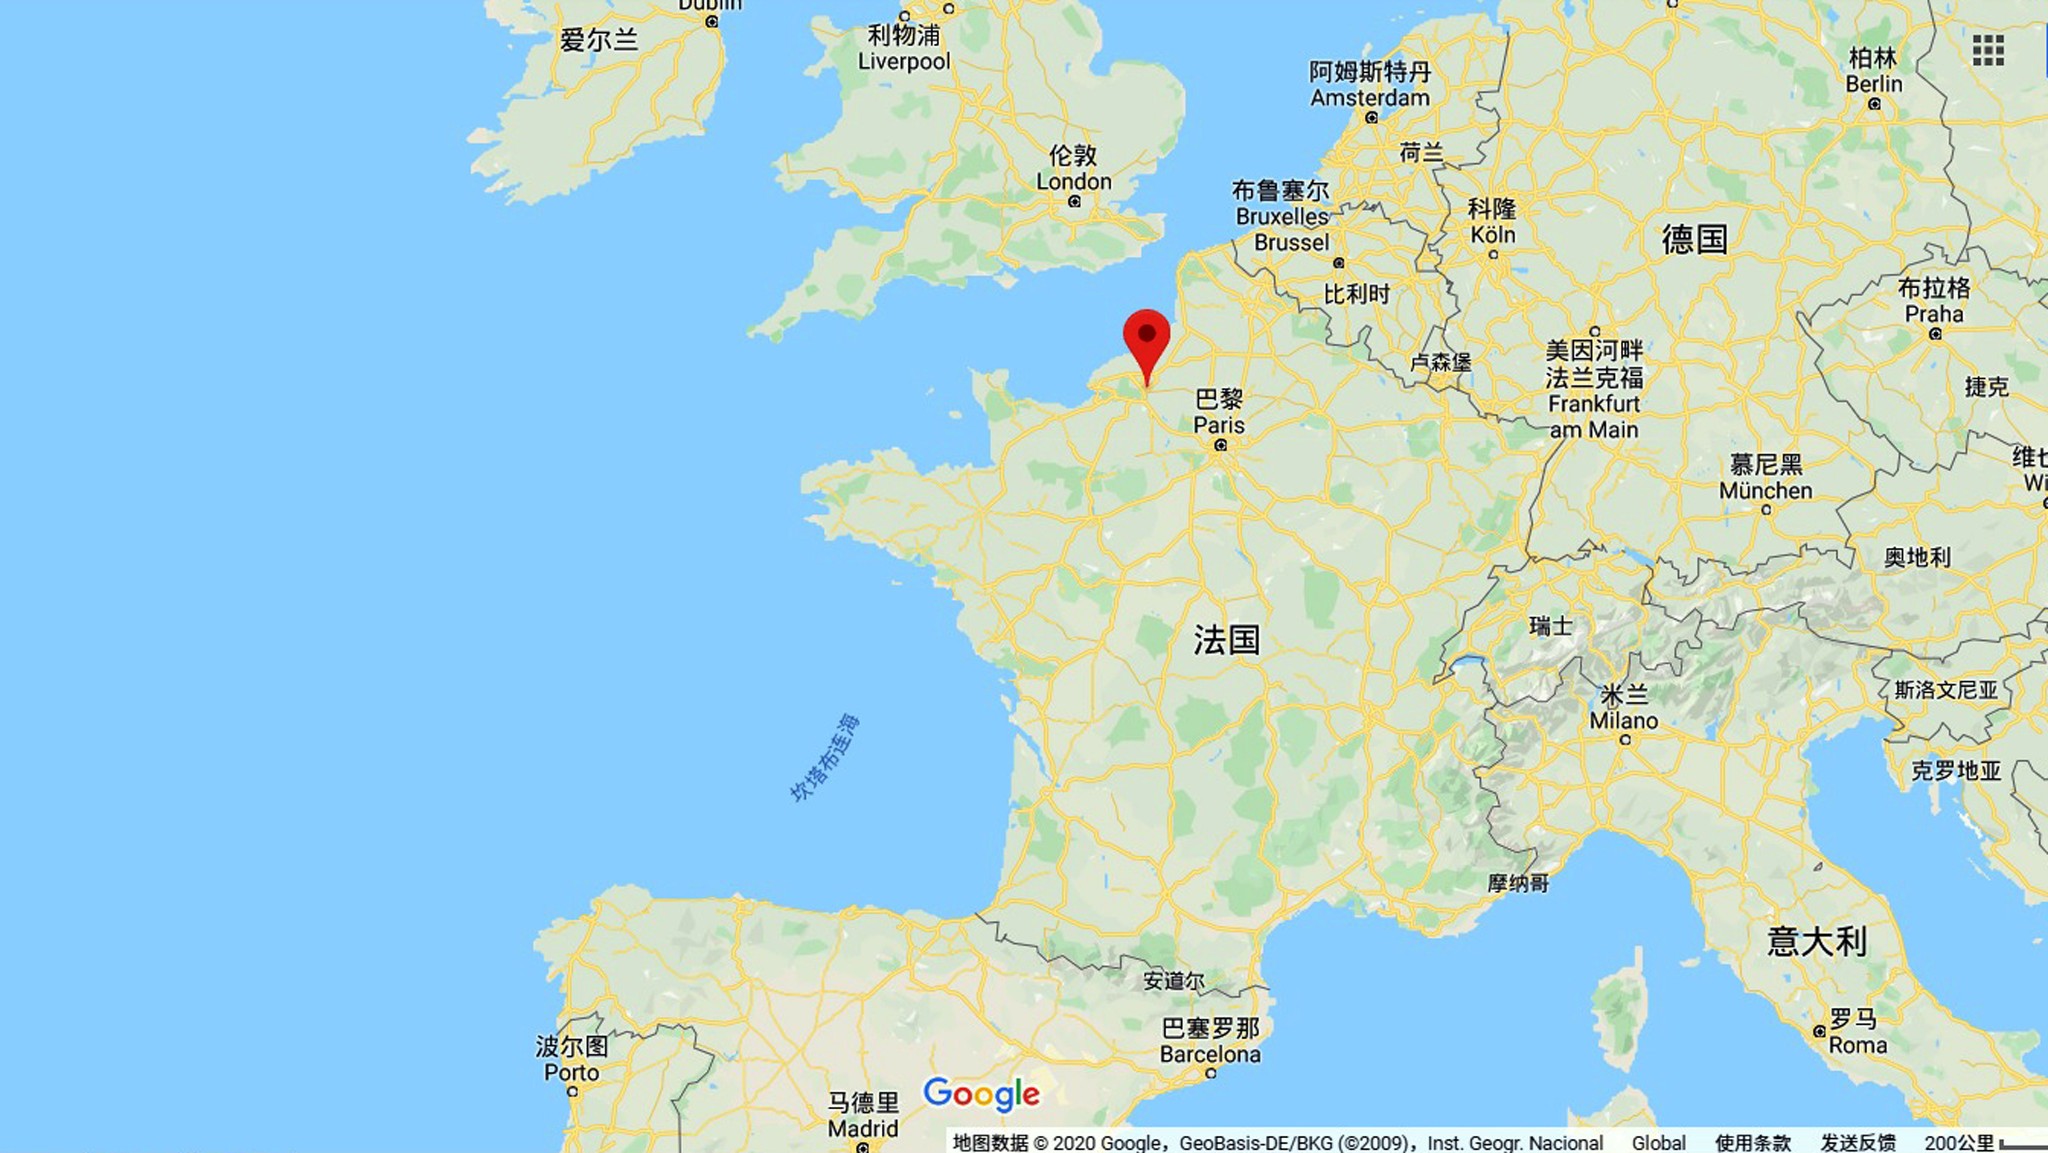 法国鲁昂地理位置图片